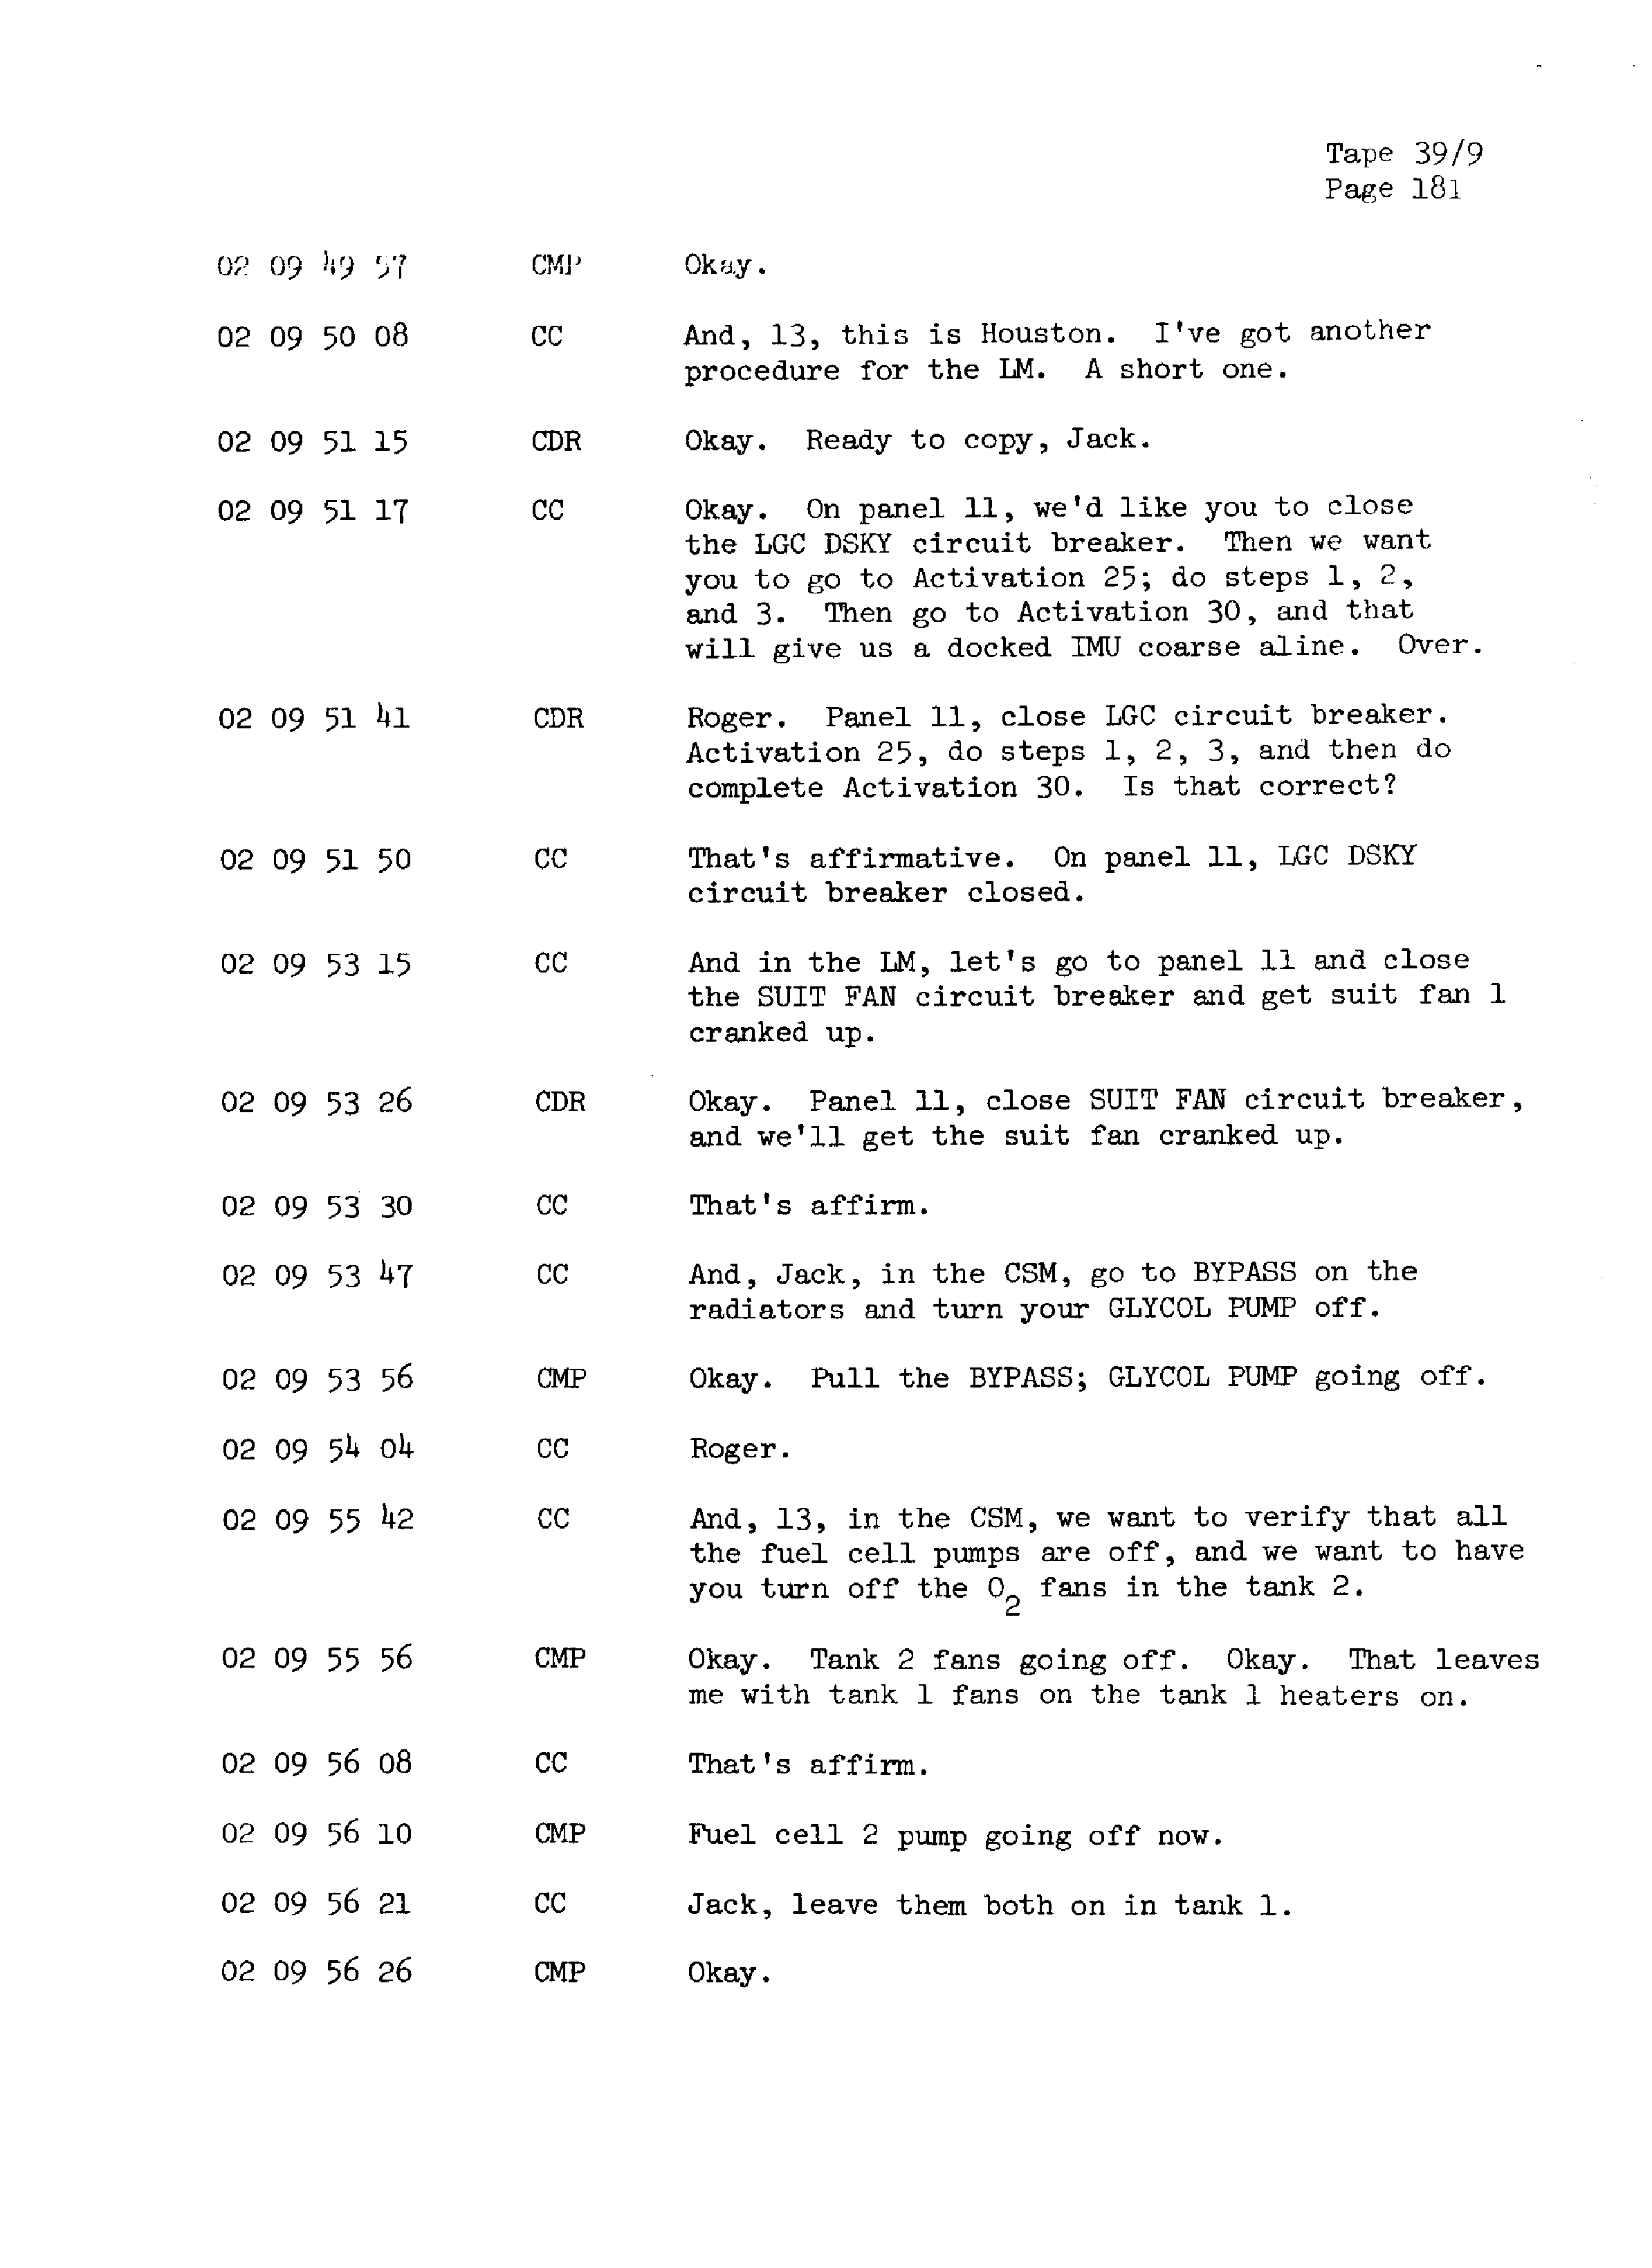 Page 188 of Apollo 13’s original transcript